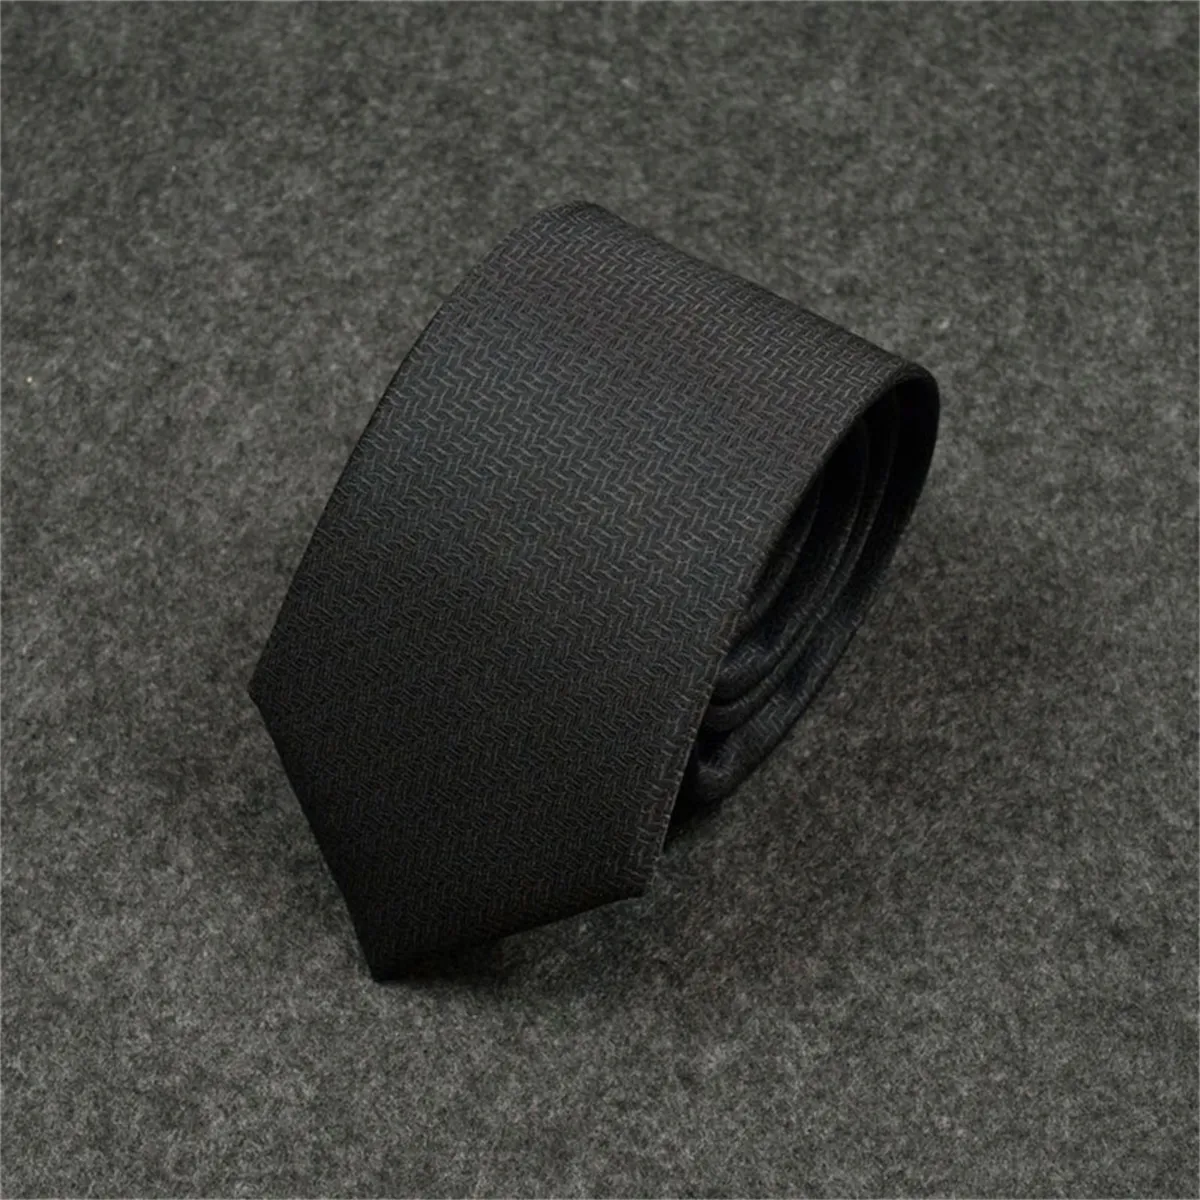 H2023 Новые мужские галстуки, модный шелковый галстук, 100% дизайнерский галстук, жаккардовый классический тканый галстук ручной работы для мужчин, свадебные повседневные и деловые галстуки с оригинальной коробкой 6HH96